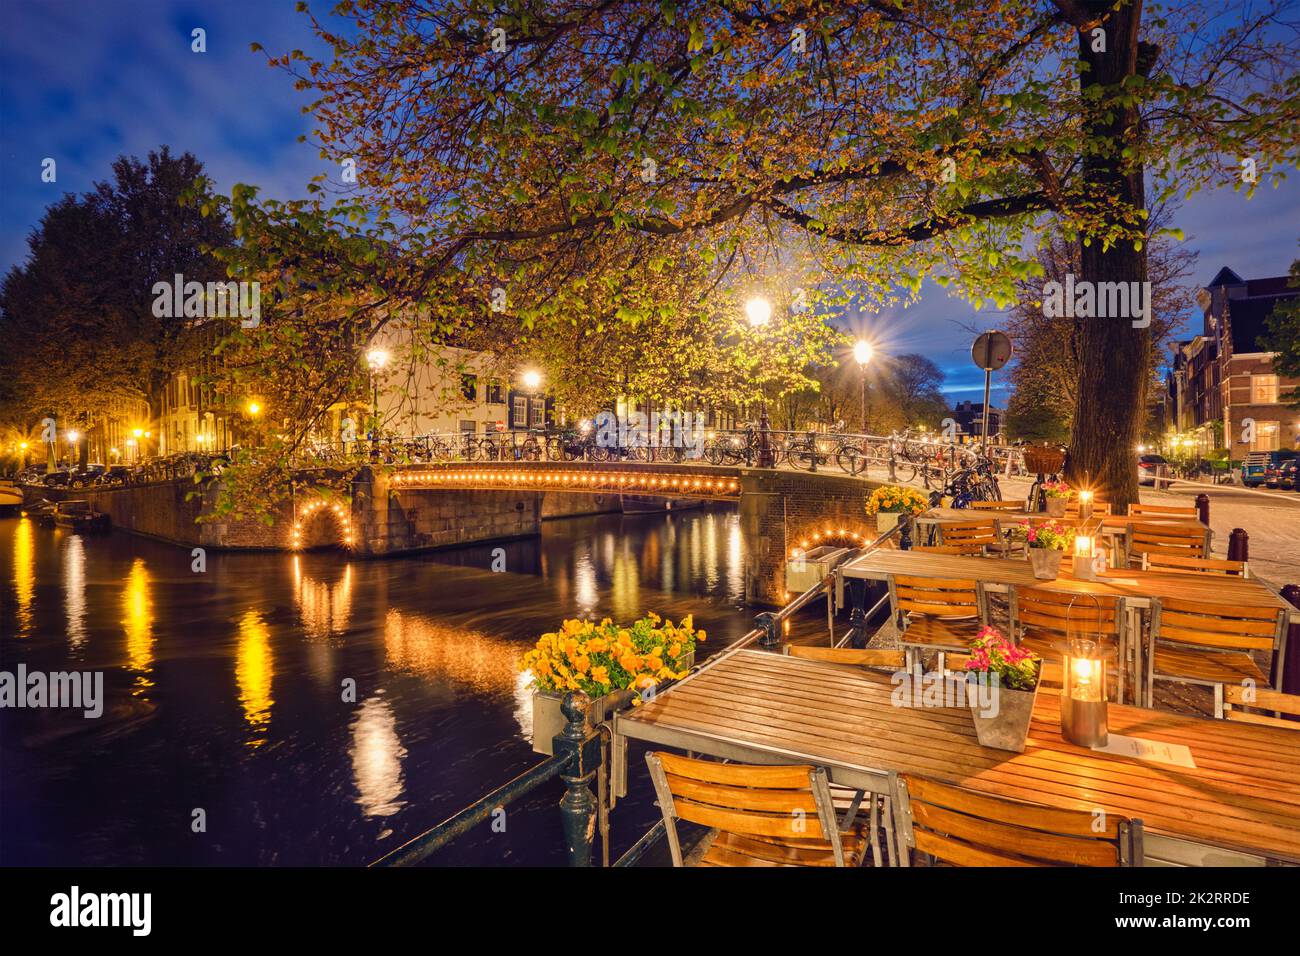 Amterdam cafe tabelle, canal, il ponte e le case medievali in e Foto Stock